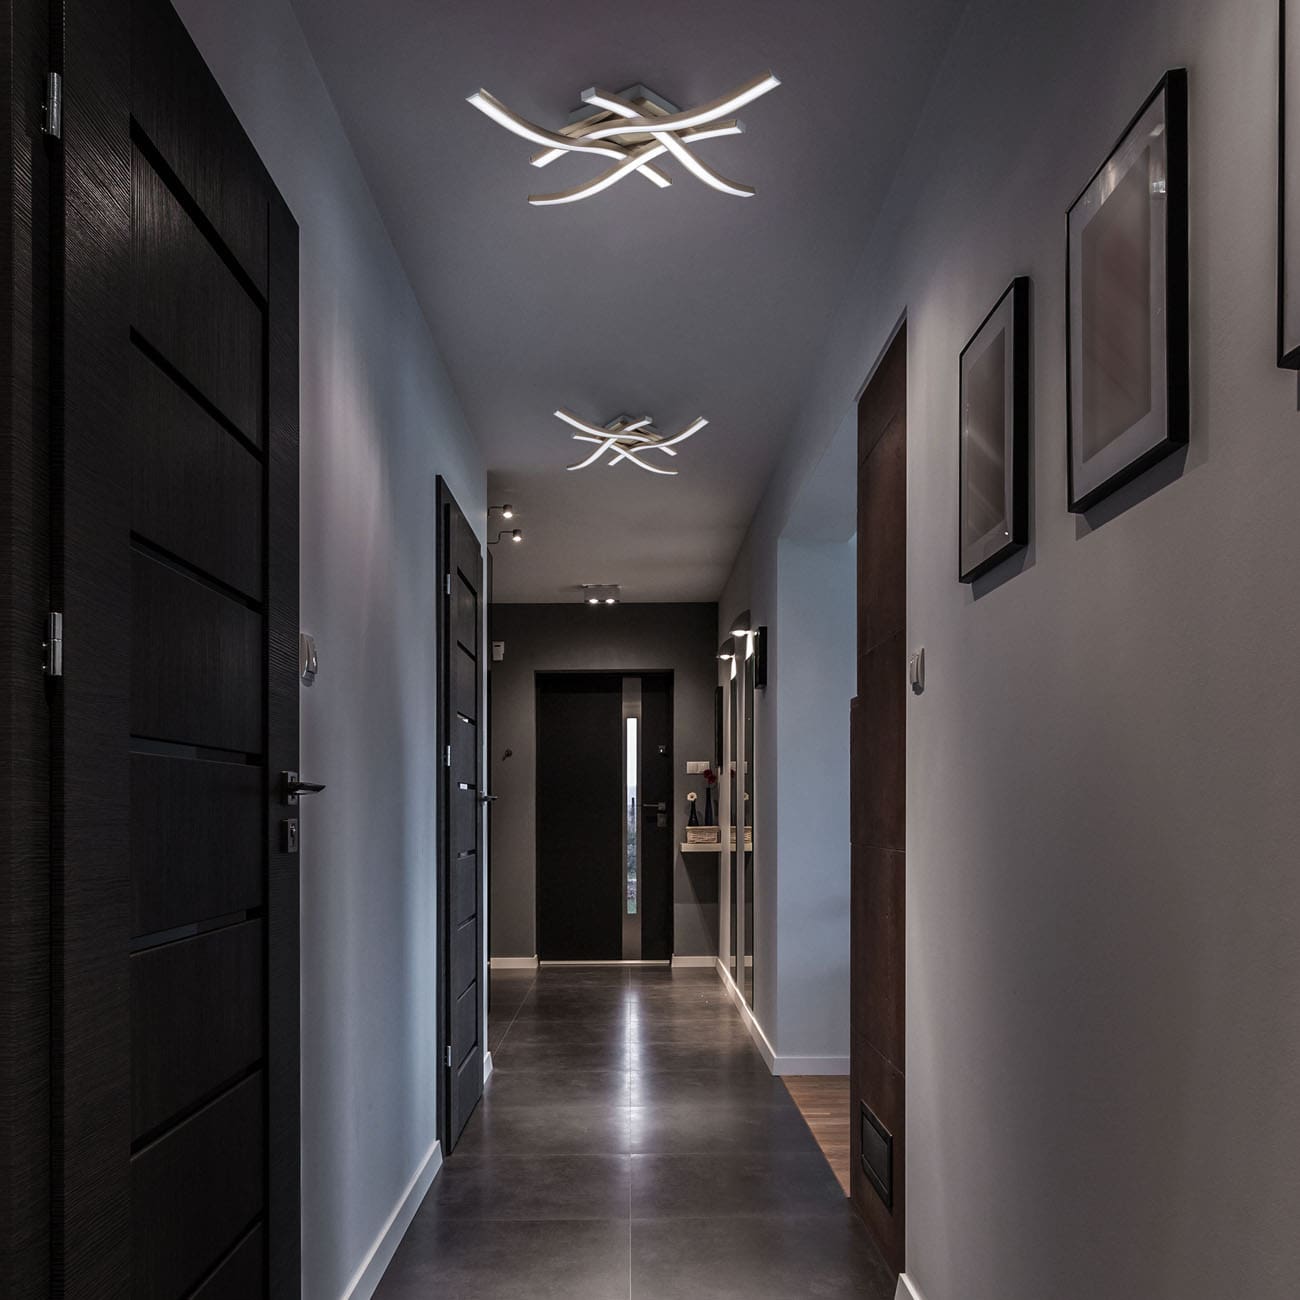 LED Deckenleuchte 42x42cm  - 4-flammig - Design-Deckenlampe Wohnzimmer Küche Flur flach 95mm 230V 17W 1520lm 4000K neutralweiß | nickel-matt - 2